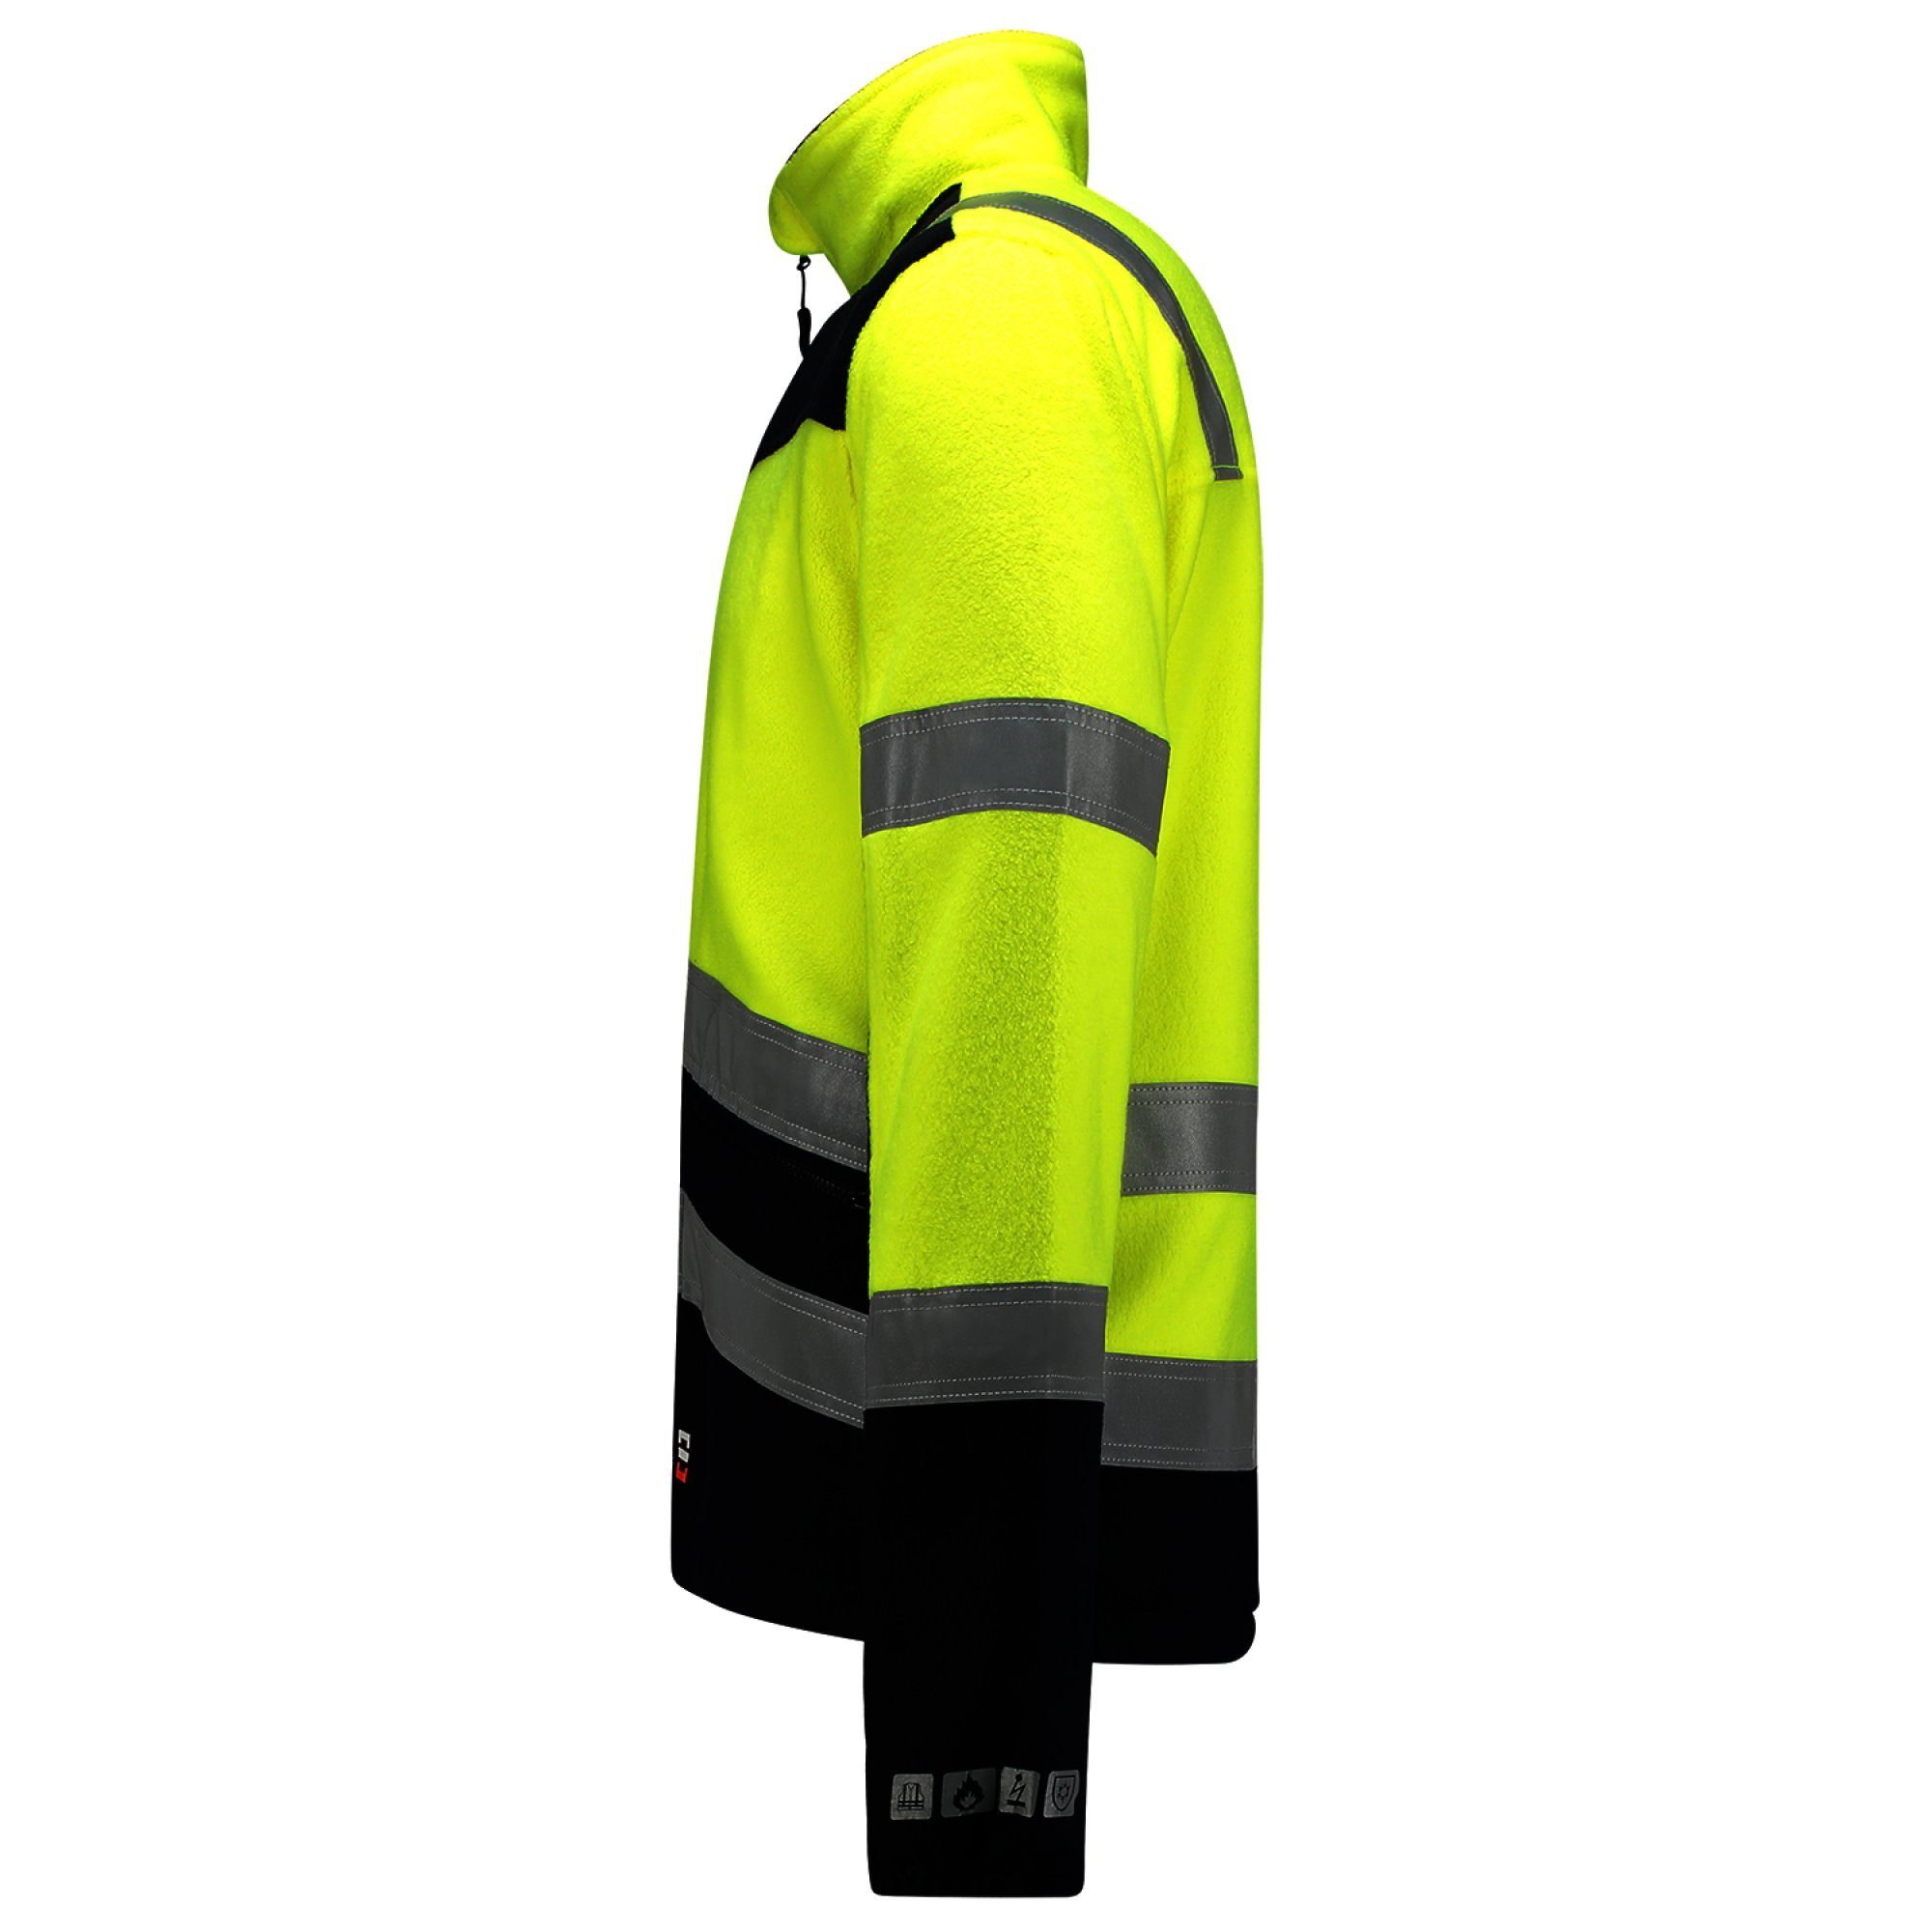 TRICORP Safety Arbeitsjacke Safety in Übergrößen - auch Multinorm Bicolor Fleecejacke -403013